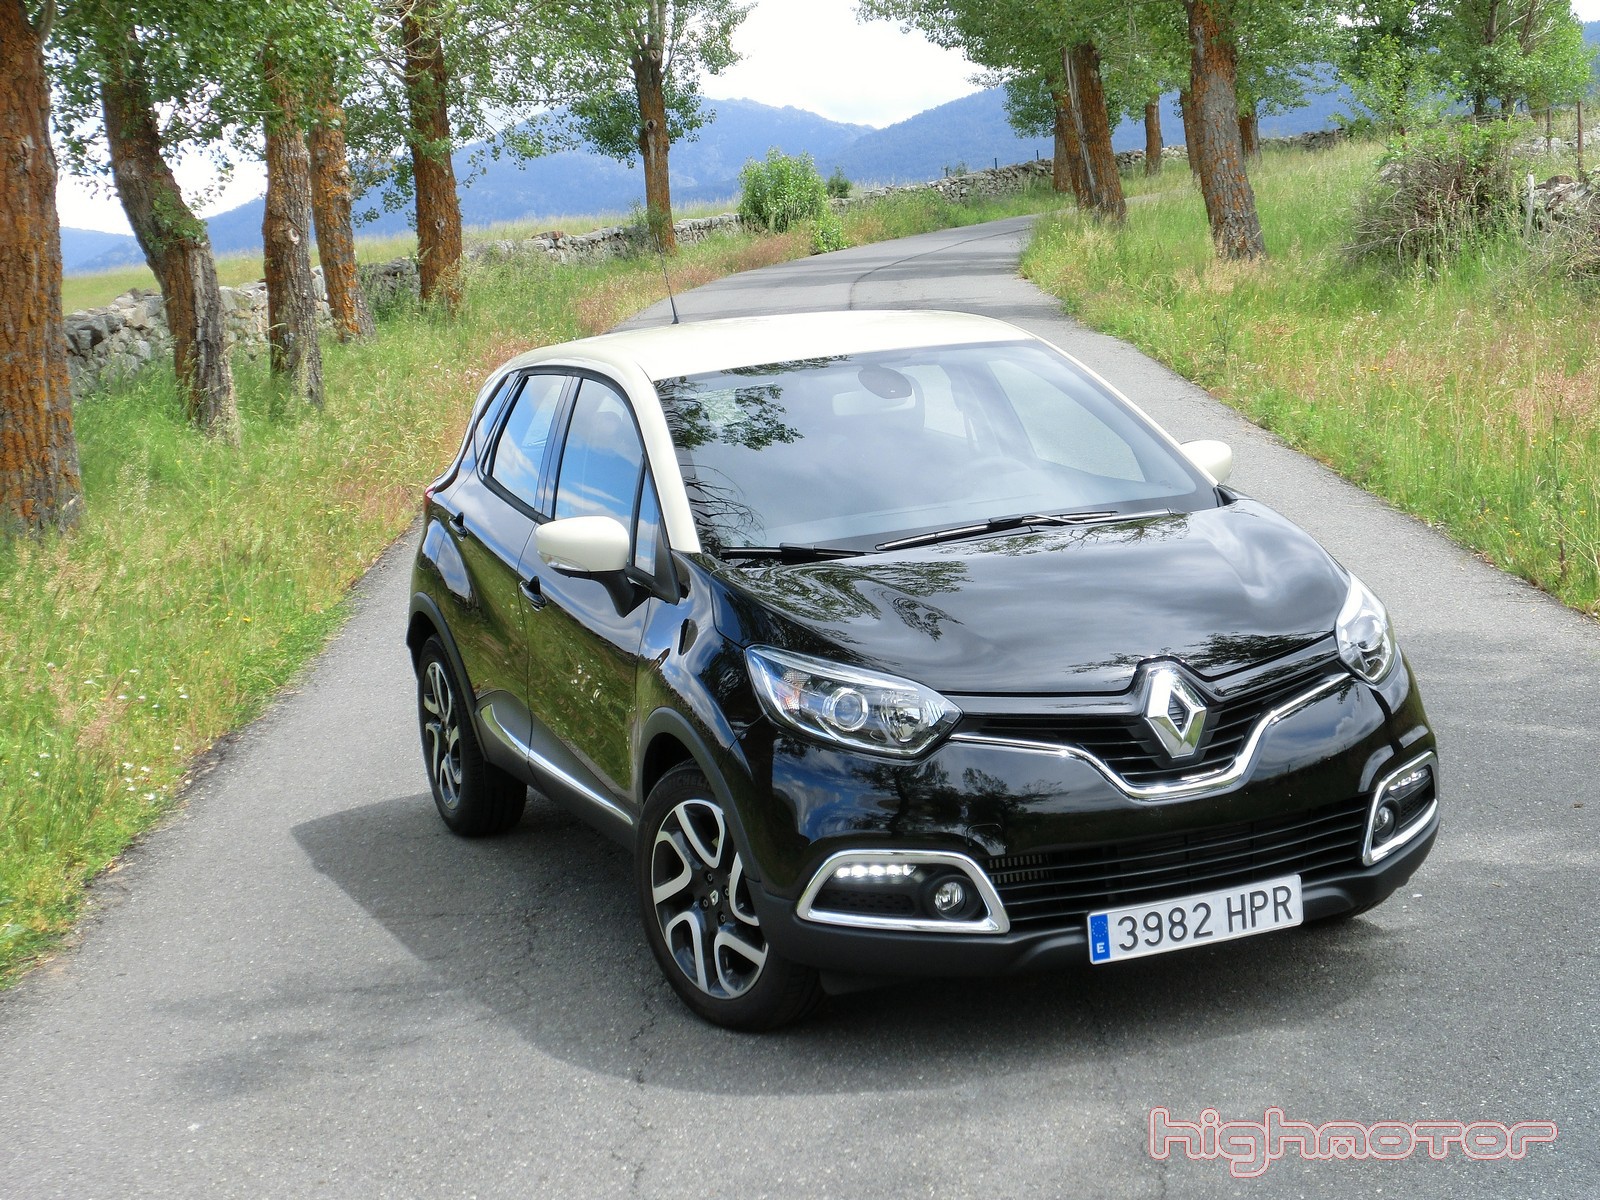 Renault Captur 1.5 dCi 90 CV, prueba (Motor, prestaciones, comportamiento y consumo)